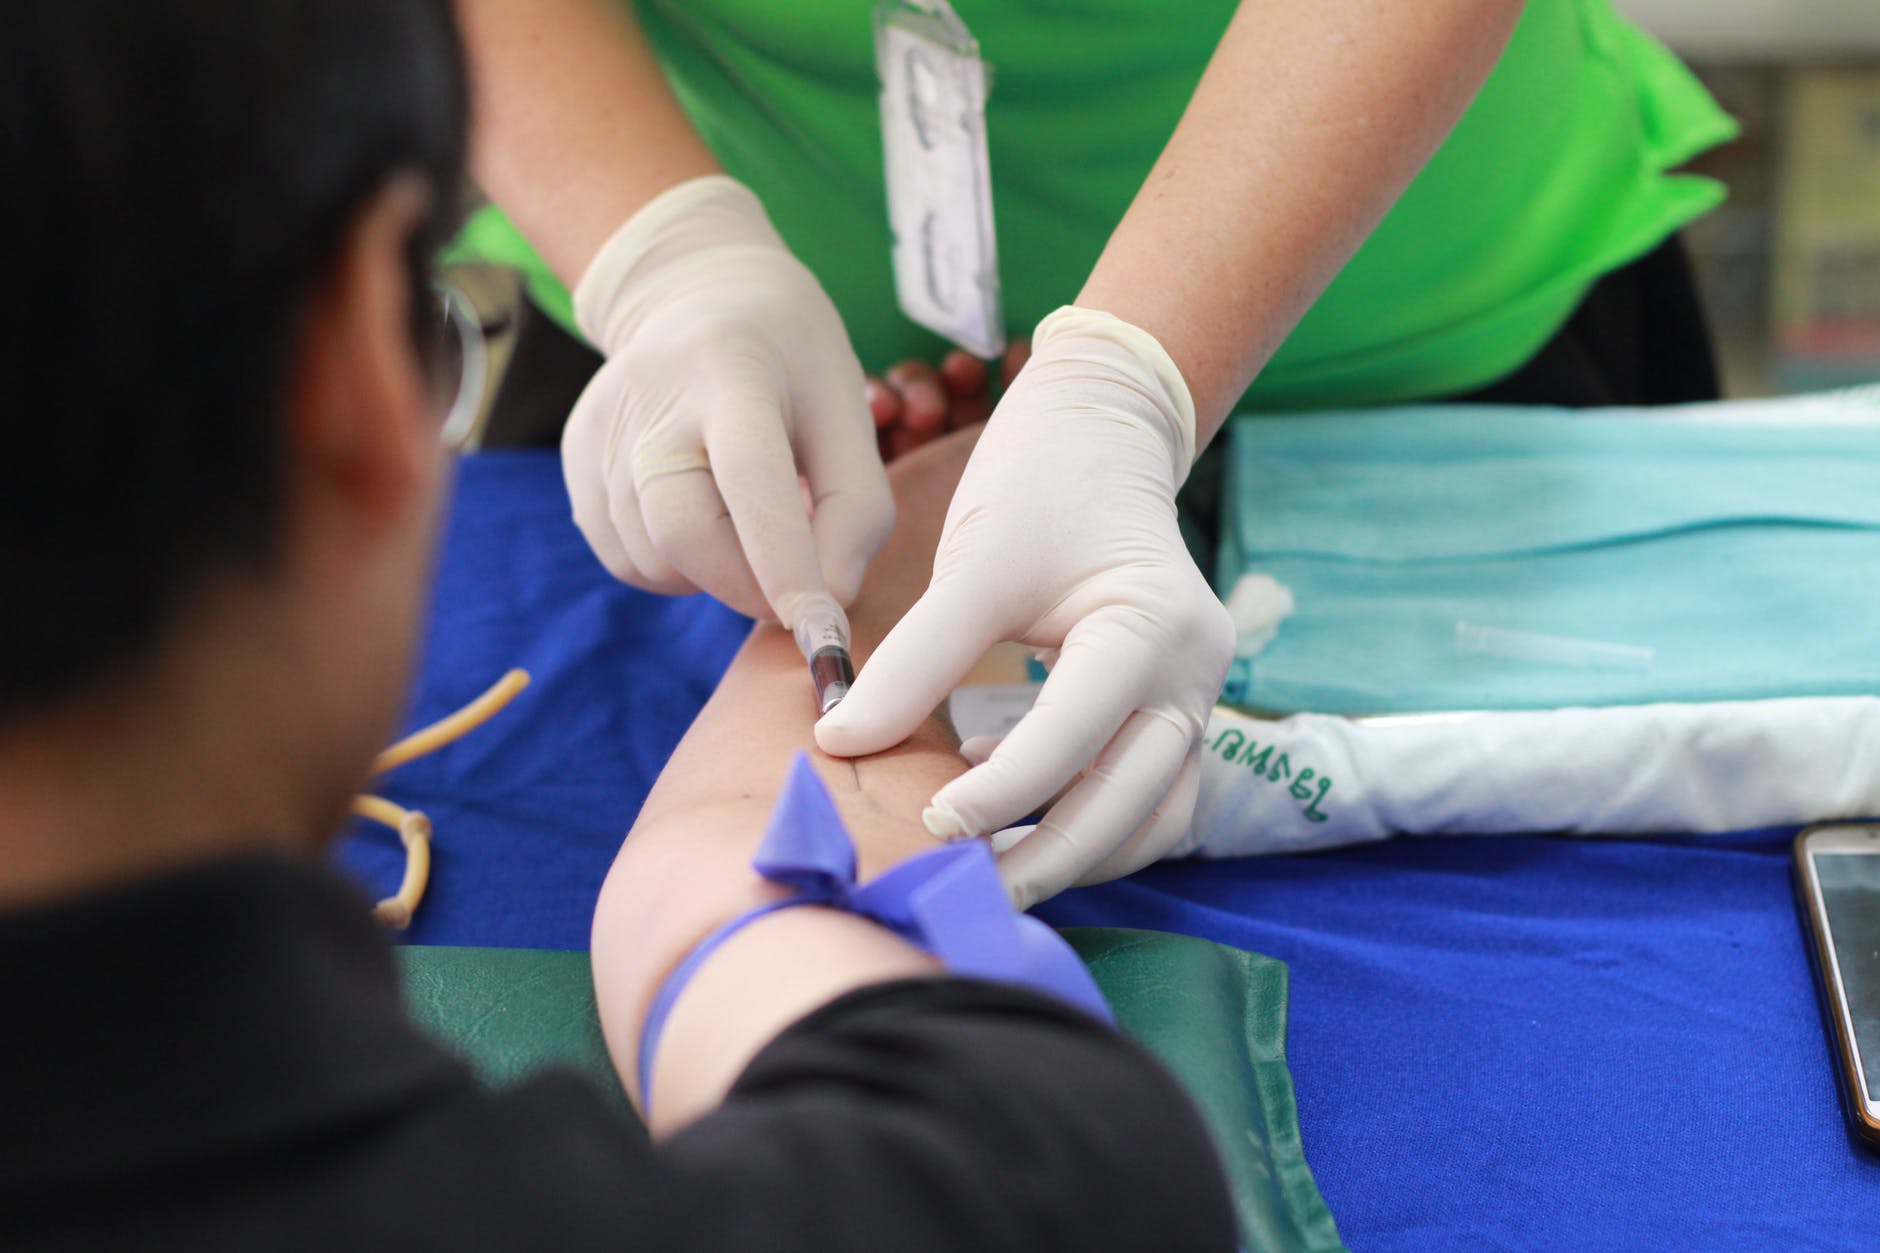 Запорожцев просят сдать кровь на донорство с отрицательным резусом: как помочь